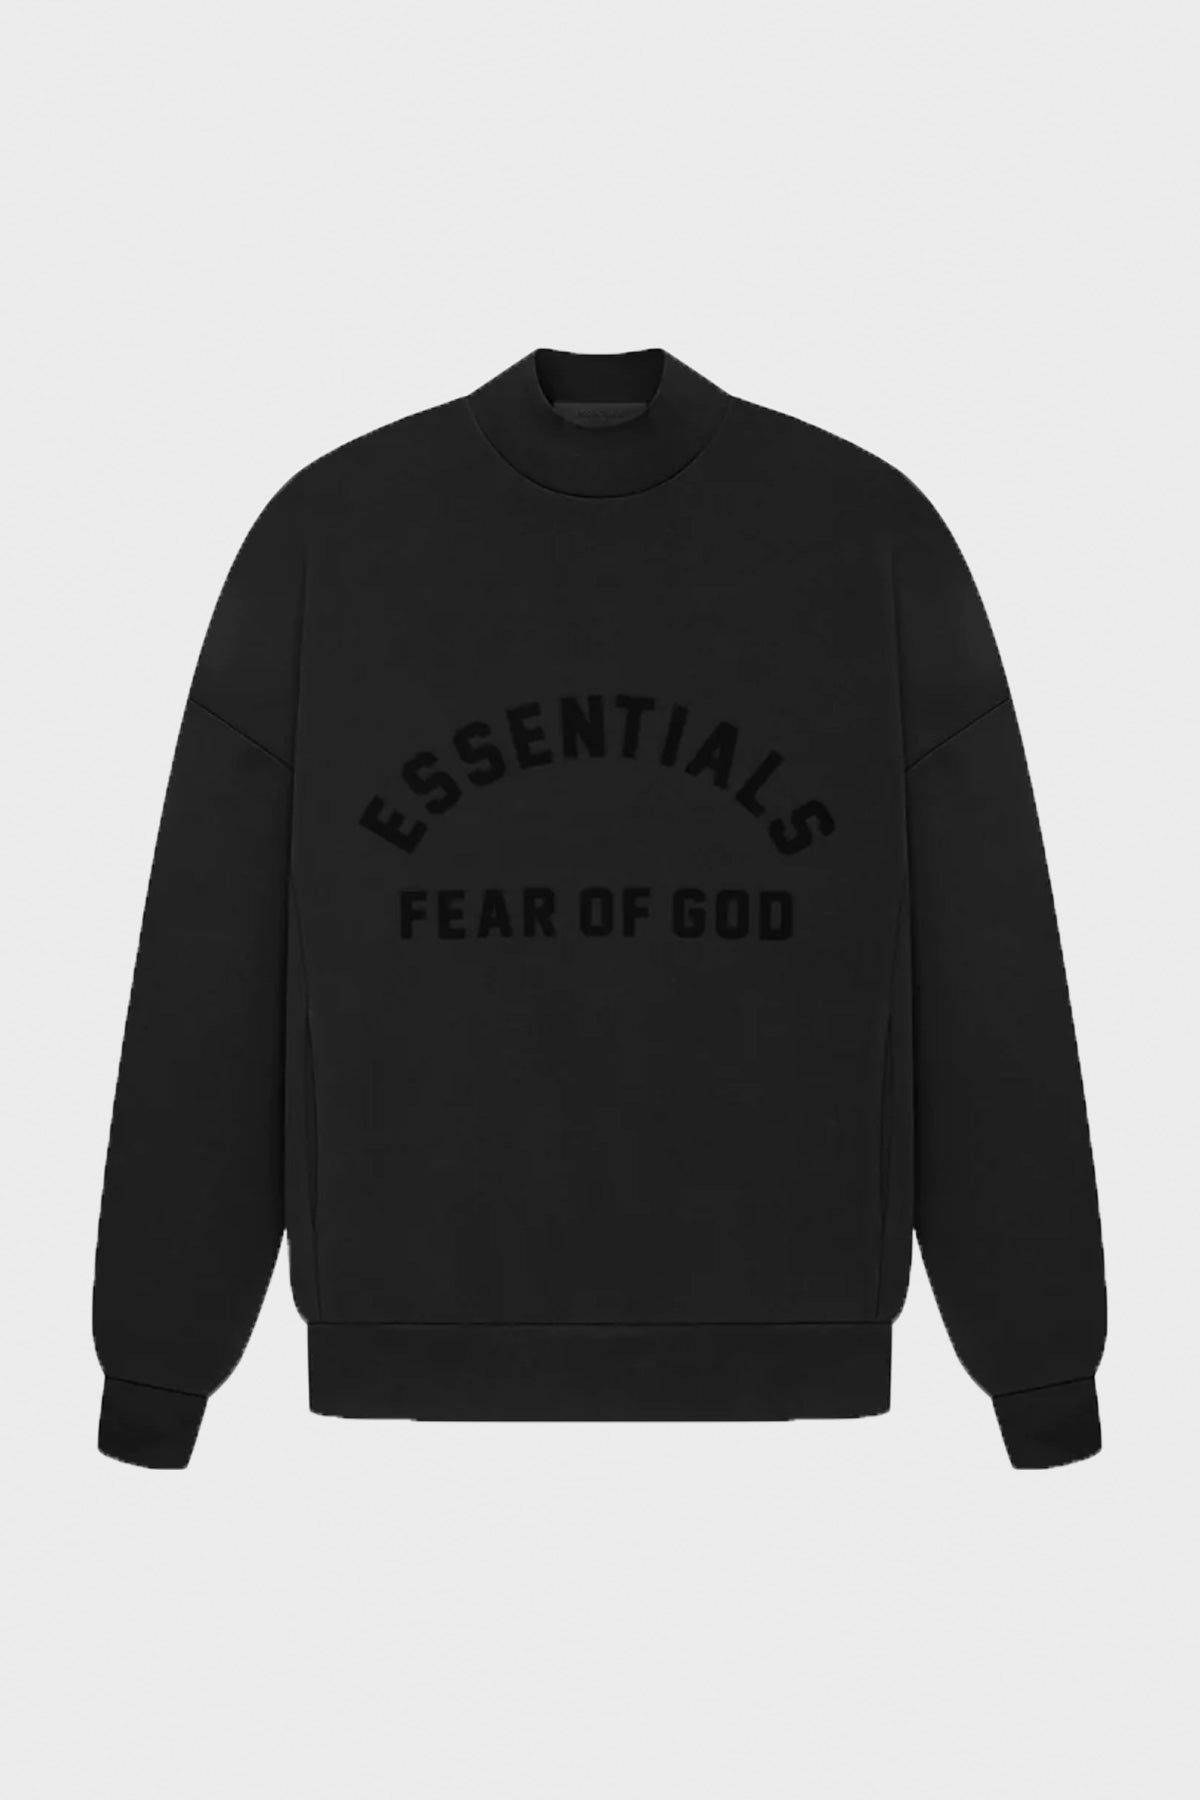 Fear of God Essentials - Core Crewneck - Jet Black - Canoe Club